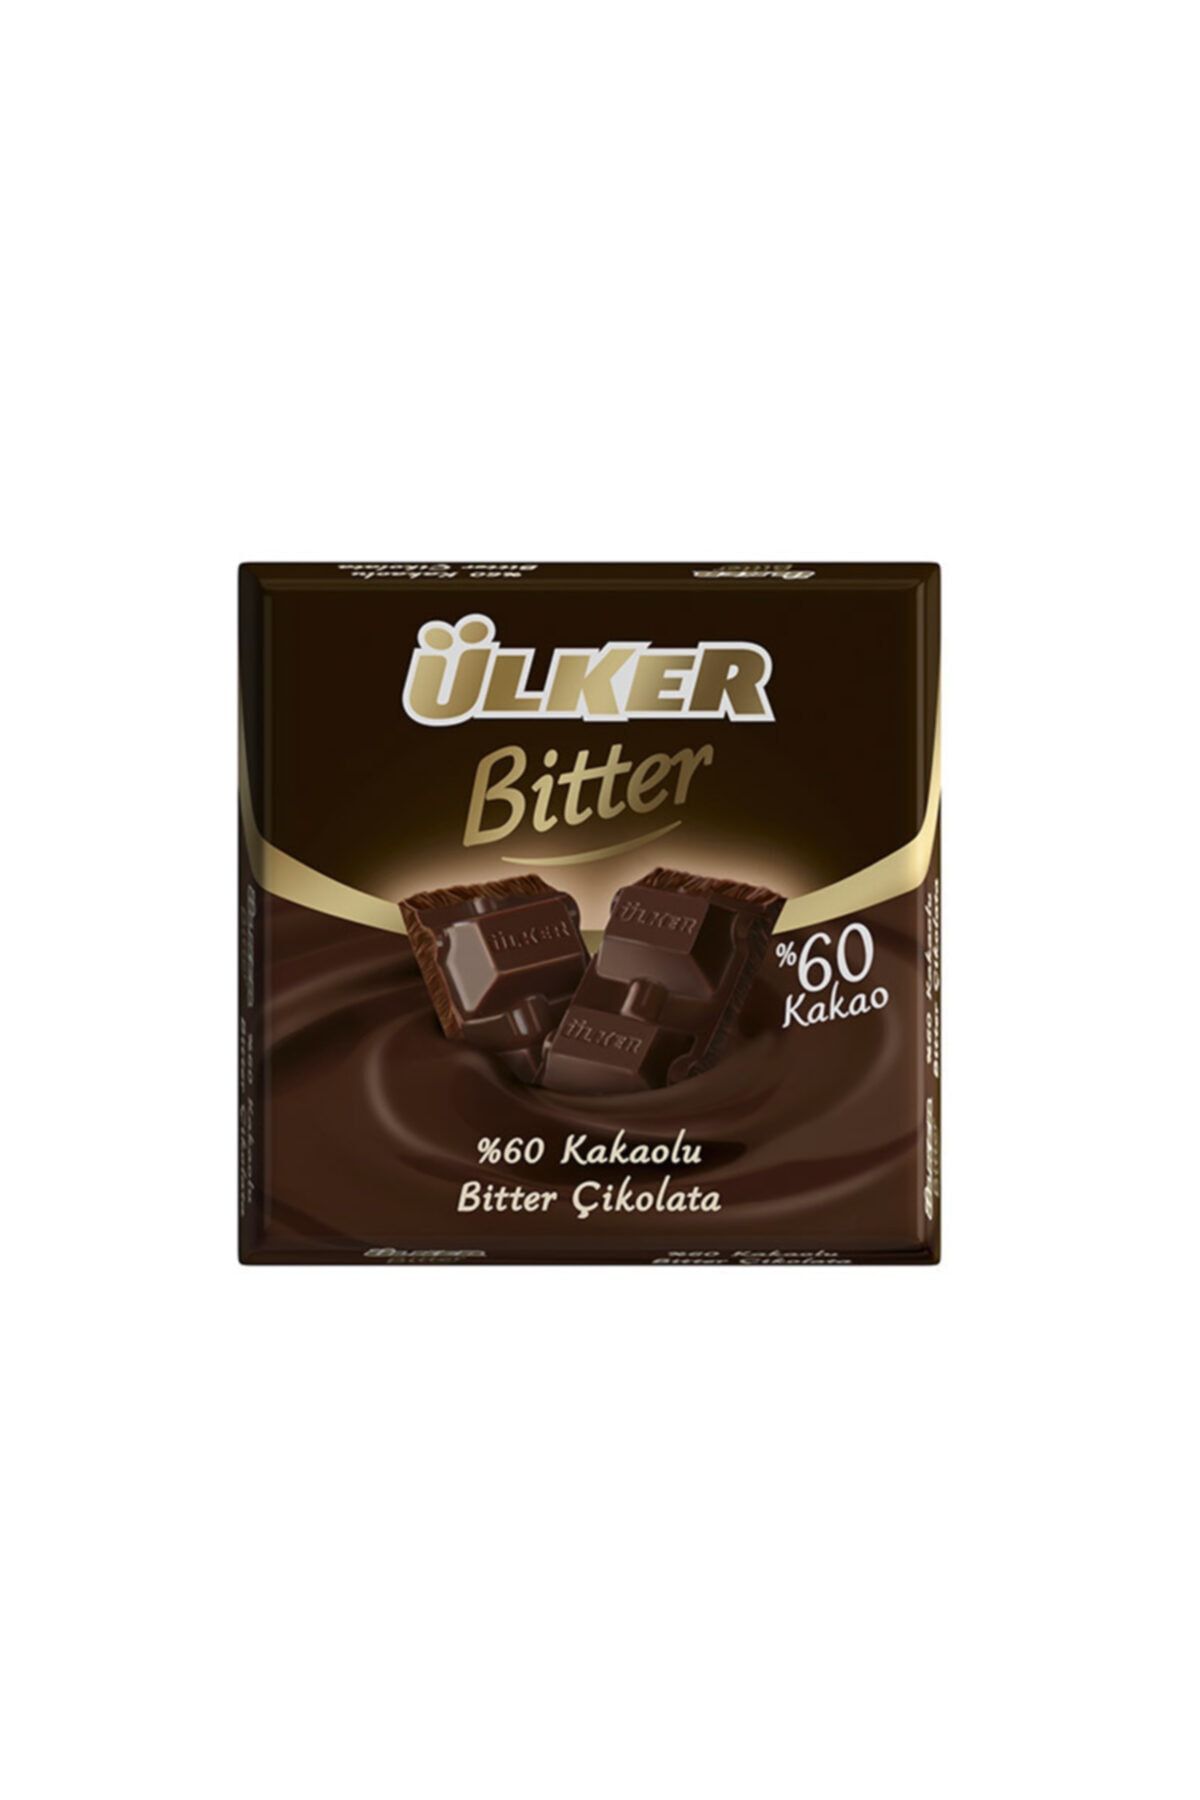 Ülker Bitter 60 Kare 70 gr 6'lı Paket Çikolata Fiyatları, Özellikleri